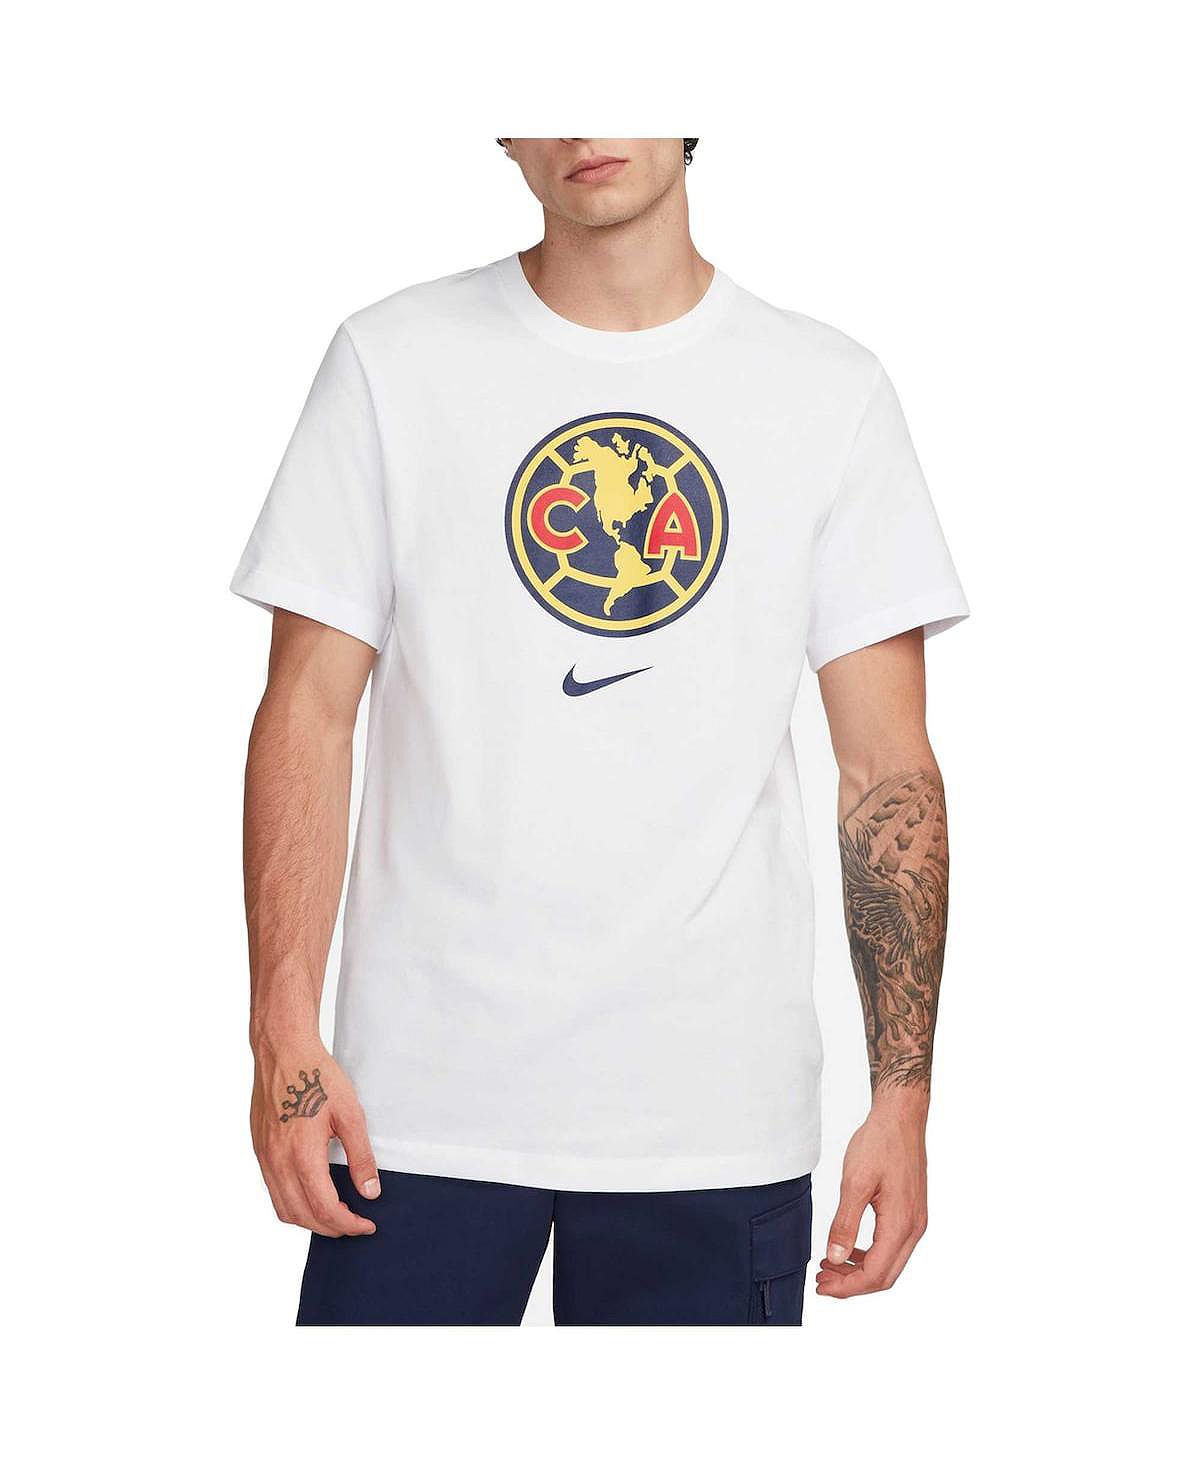 Мужская белая футболка Club America Crest Nike